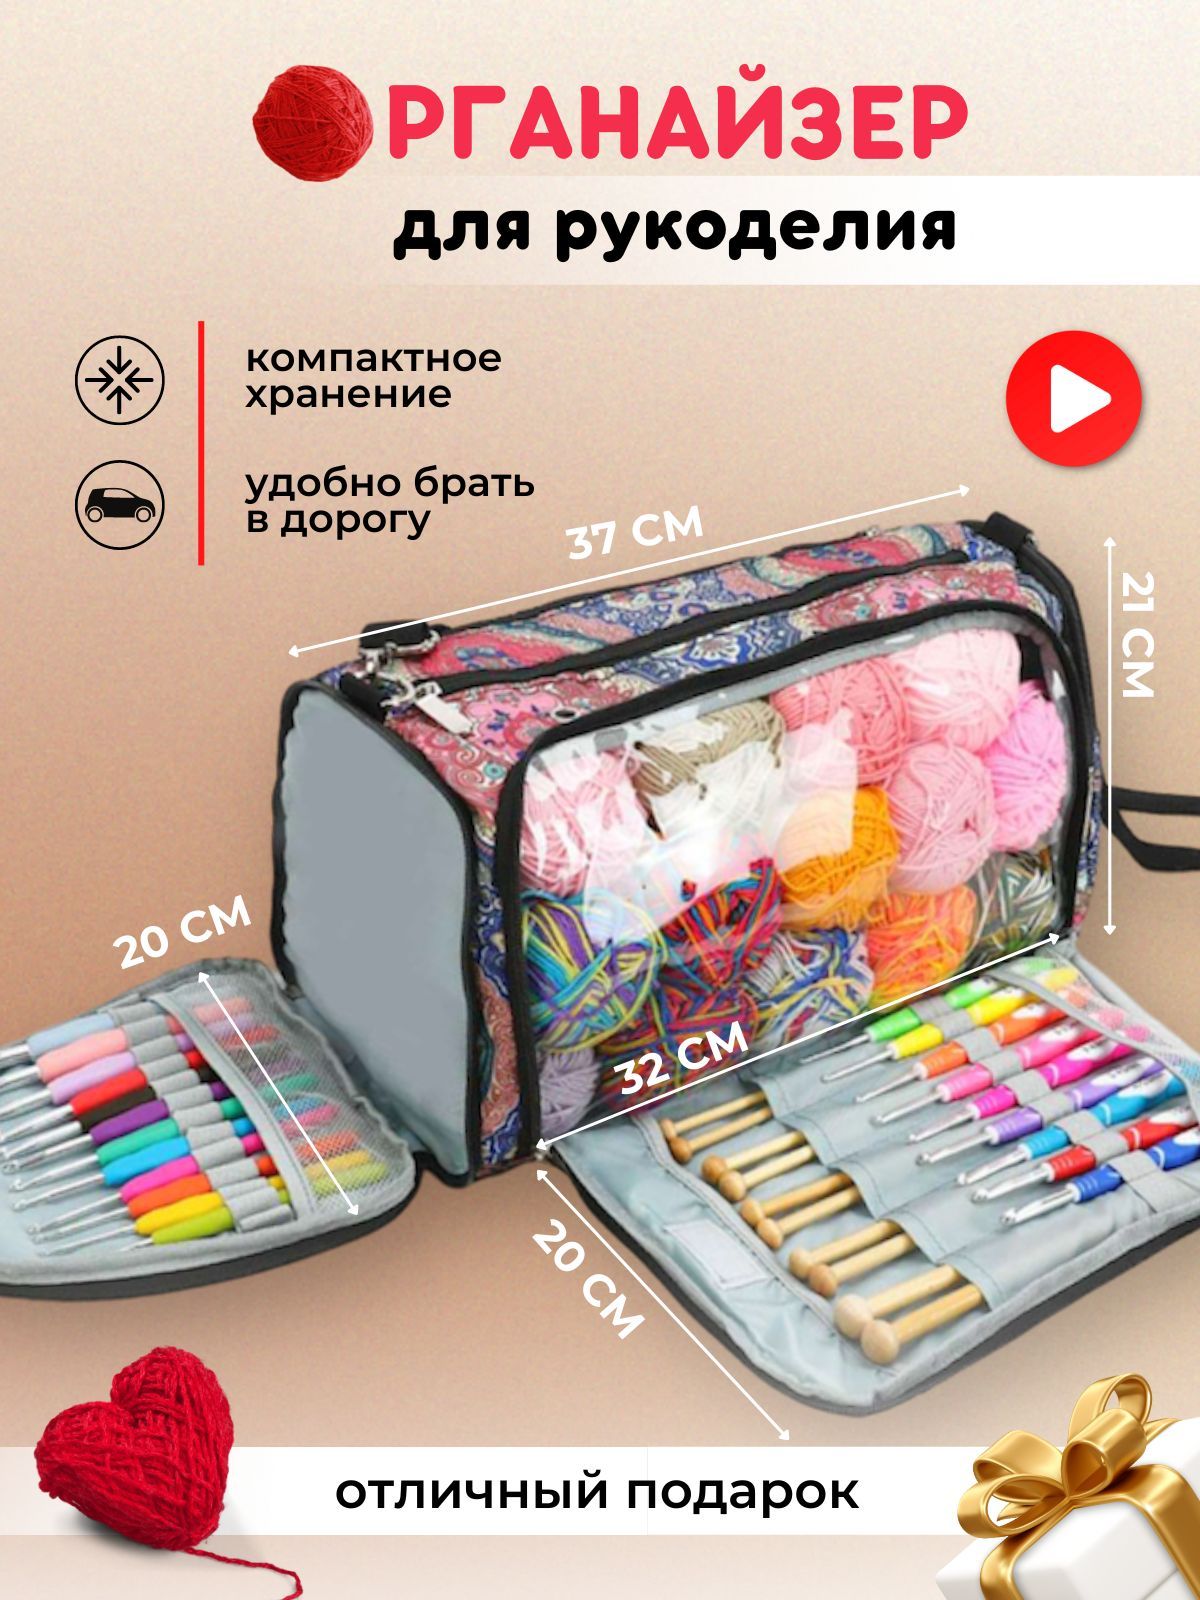 paraskevat.ru - интернет - магазин пряжи и товаров для рукоделия №1 в Казахстане!